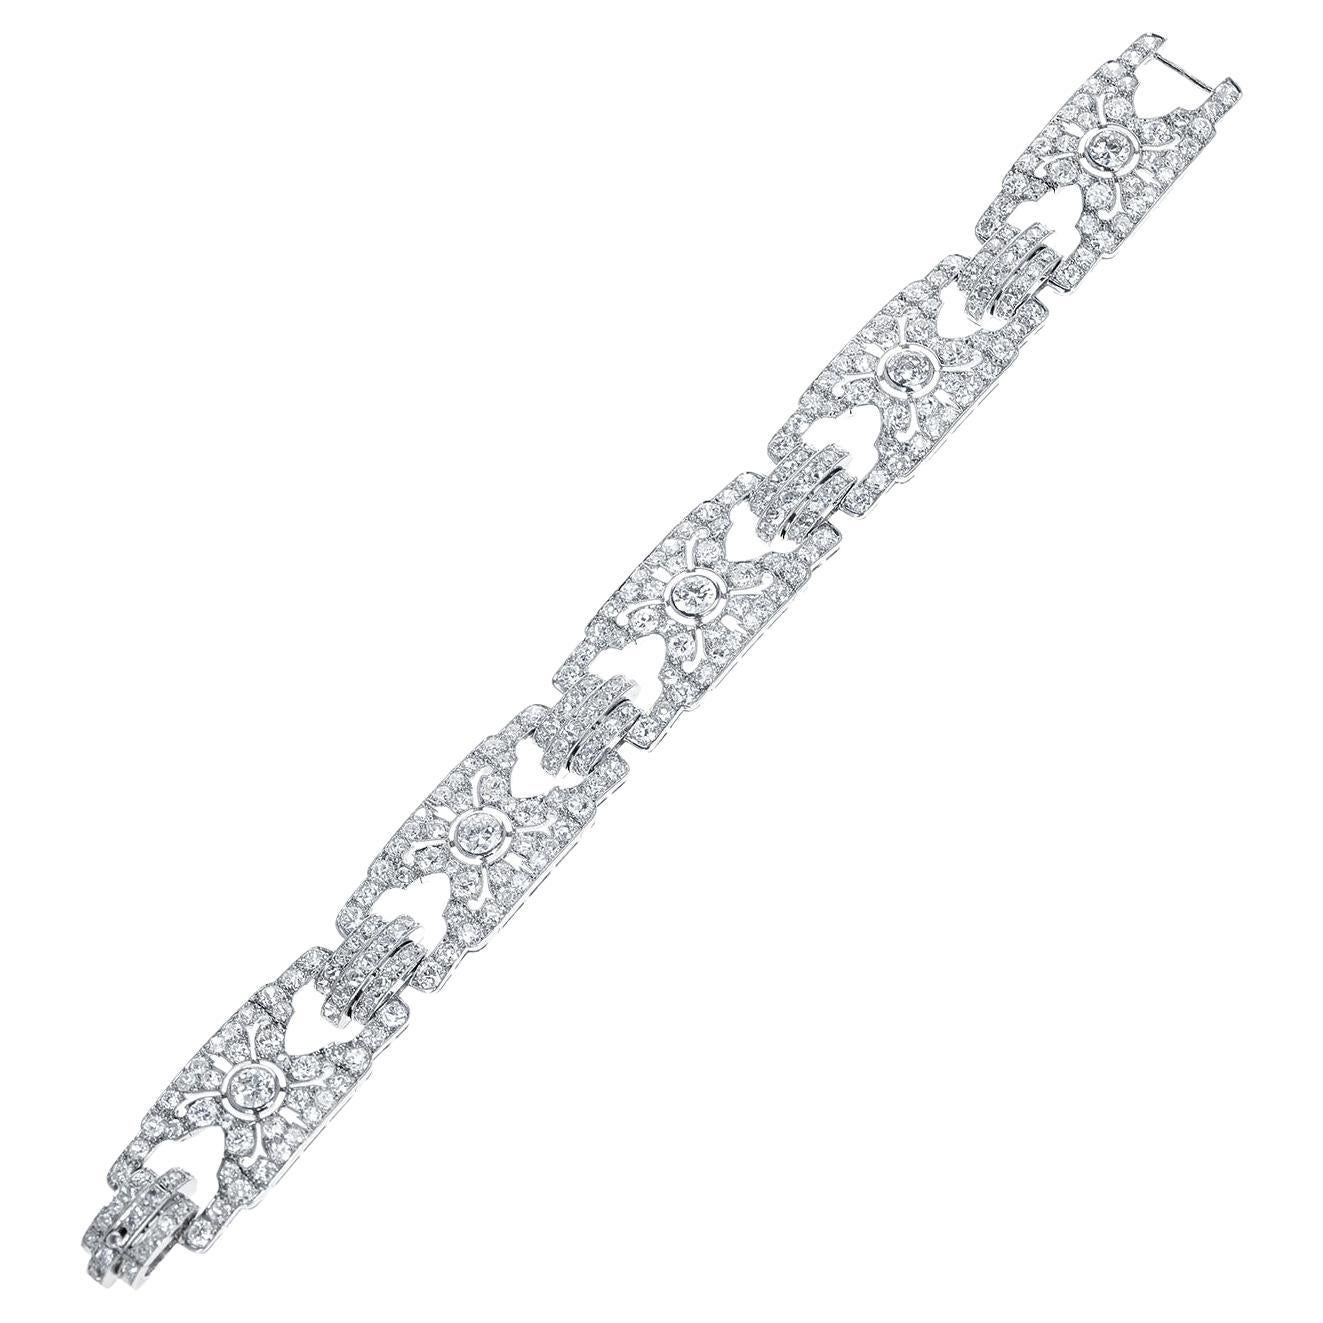 Cartier Paris Art Deco Diamond Bracelet, French Marks, Platinum